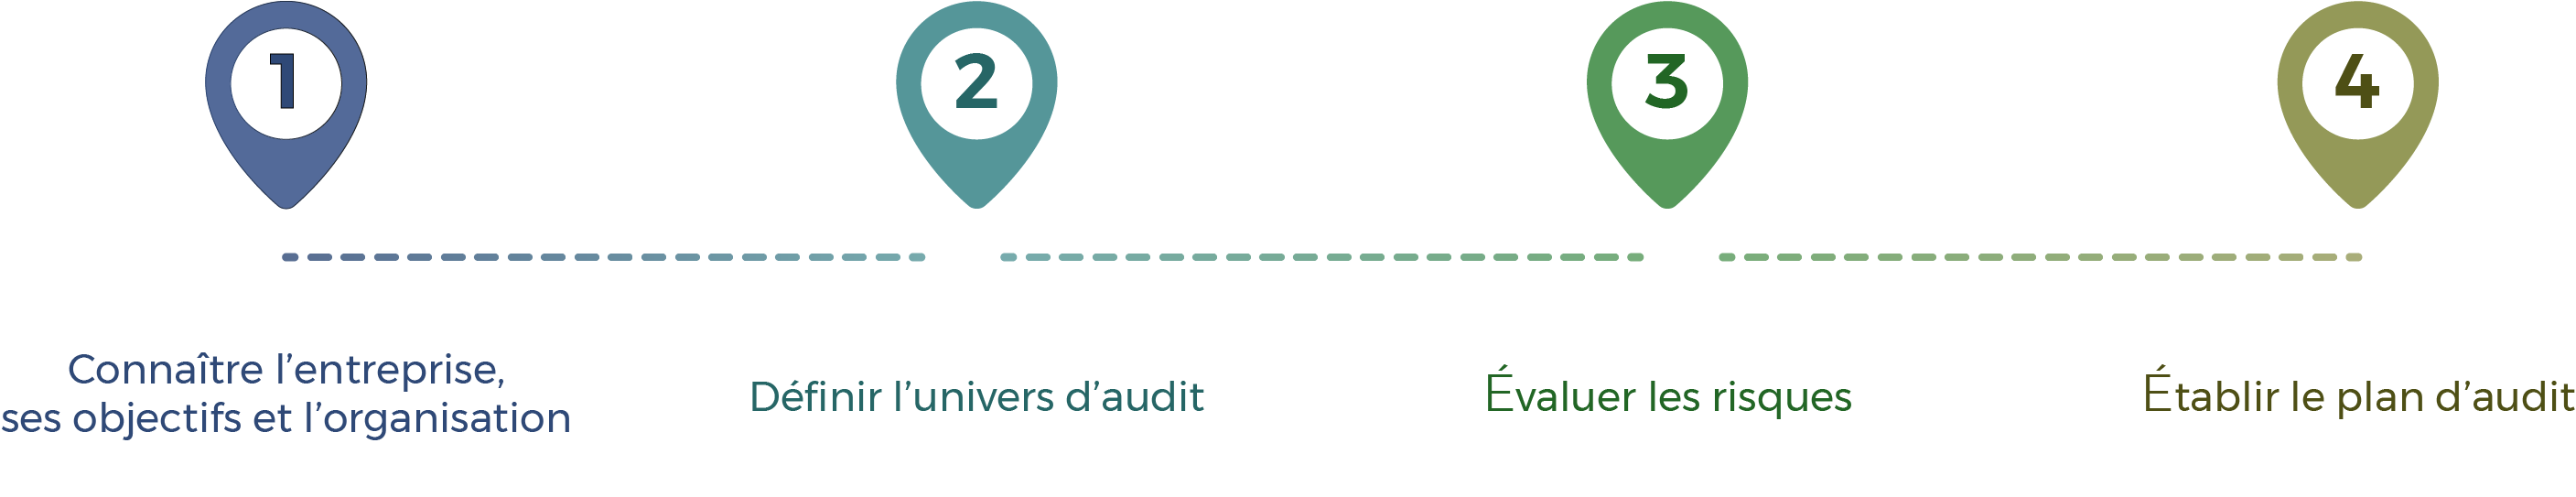 Etape 1 Connaitre l'entreprise, ses objectifs et son organisation  Etape 2 Définir l'univers d'audit  Etape 3 Evaluer les risques  Etape 4 établir le plan d'audit